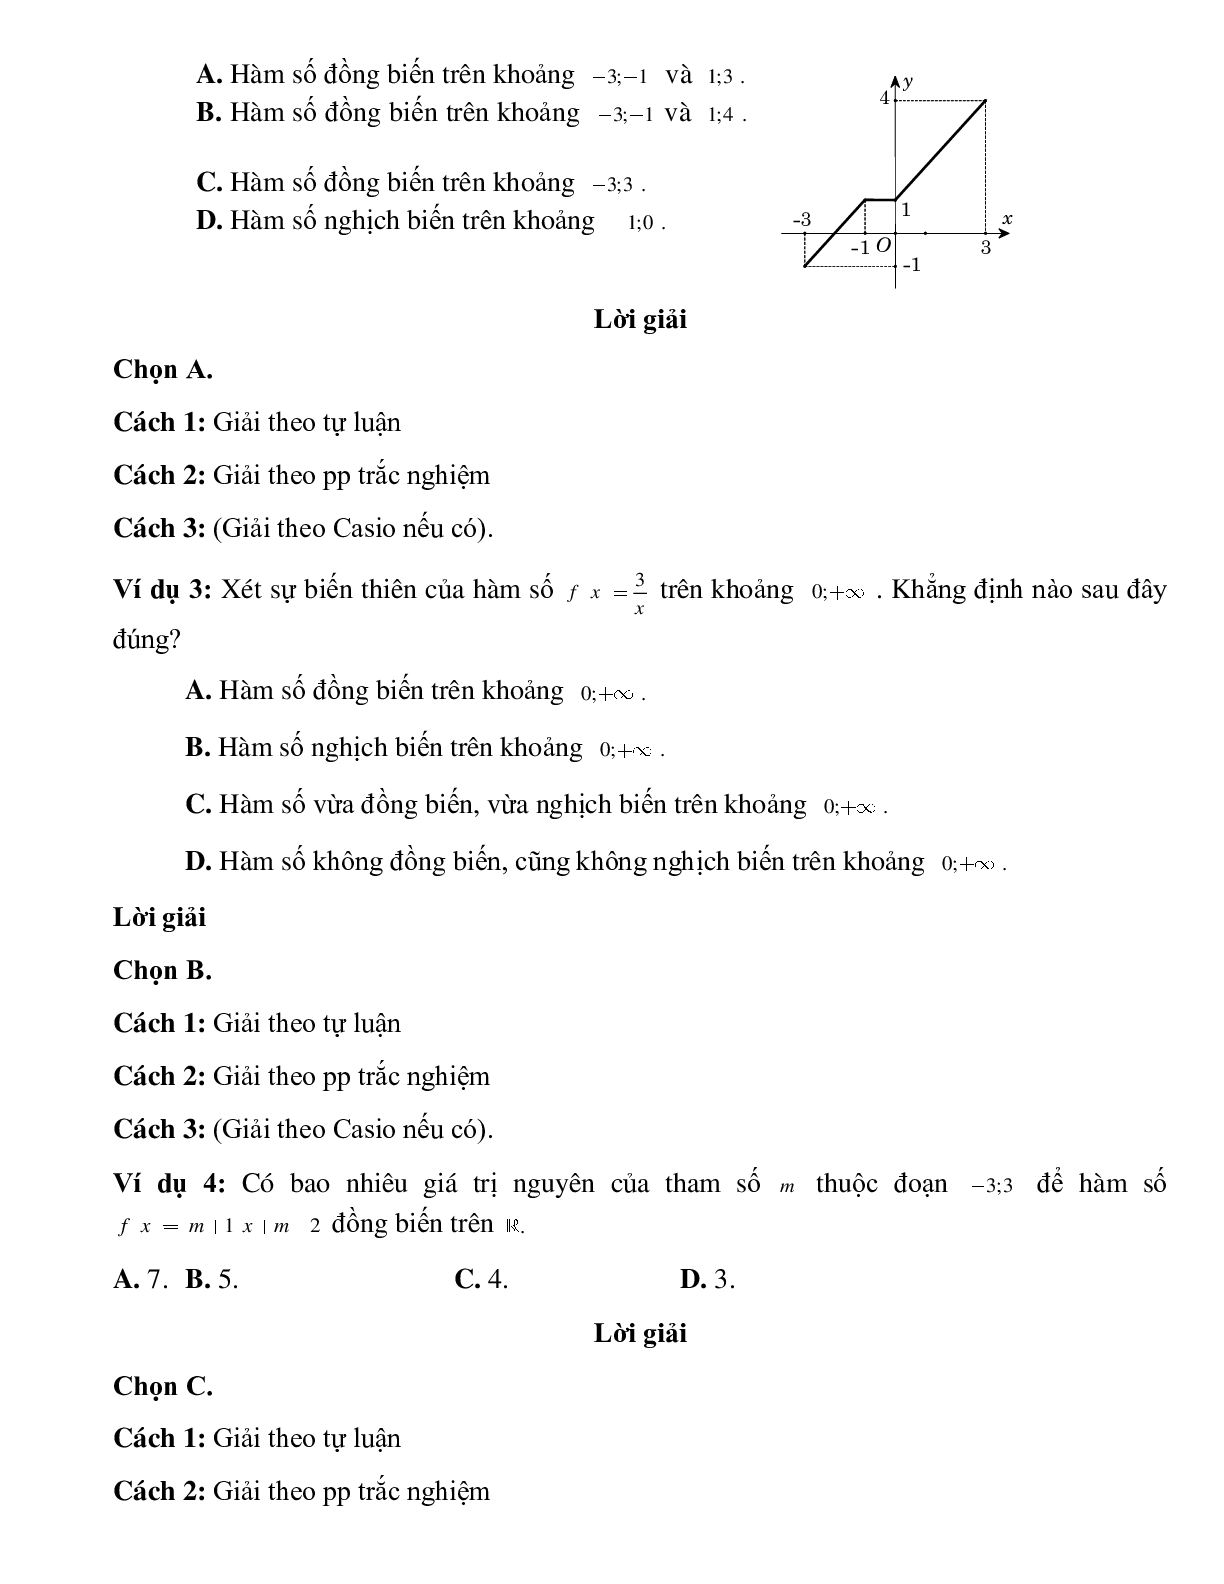 Bài tập tự luyện xét sự biến thiên của hàm số trên khoảng cho trước Toán 10 (trang 2)